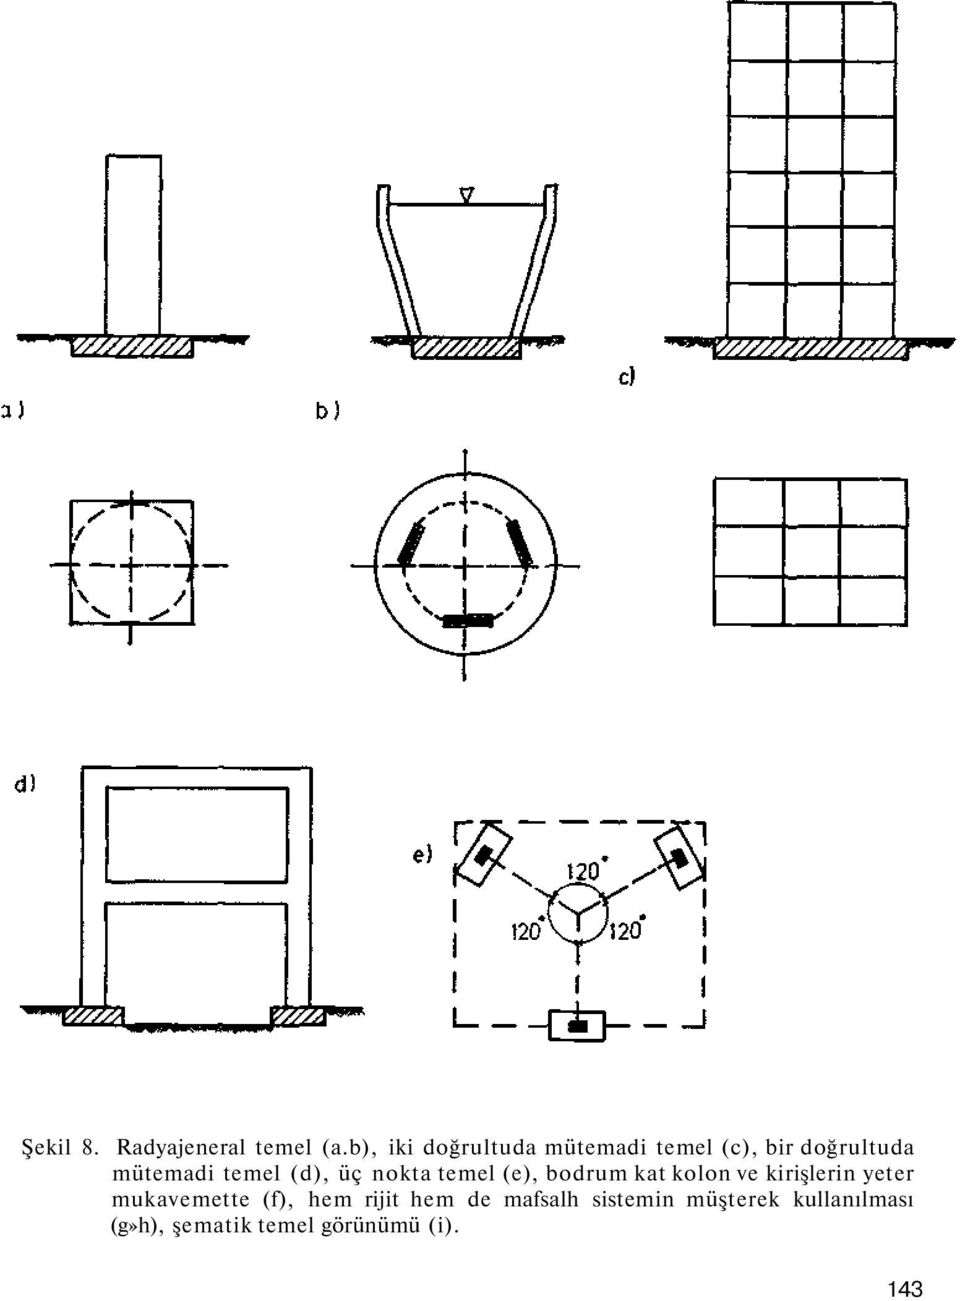 (d), üç nokta temel (e), bodrum kat kolon ve kirişlerin yeter